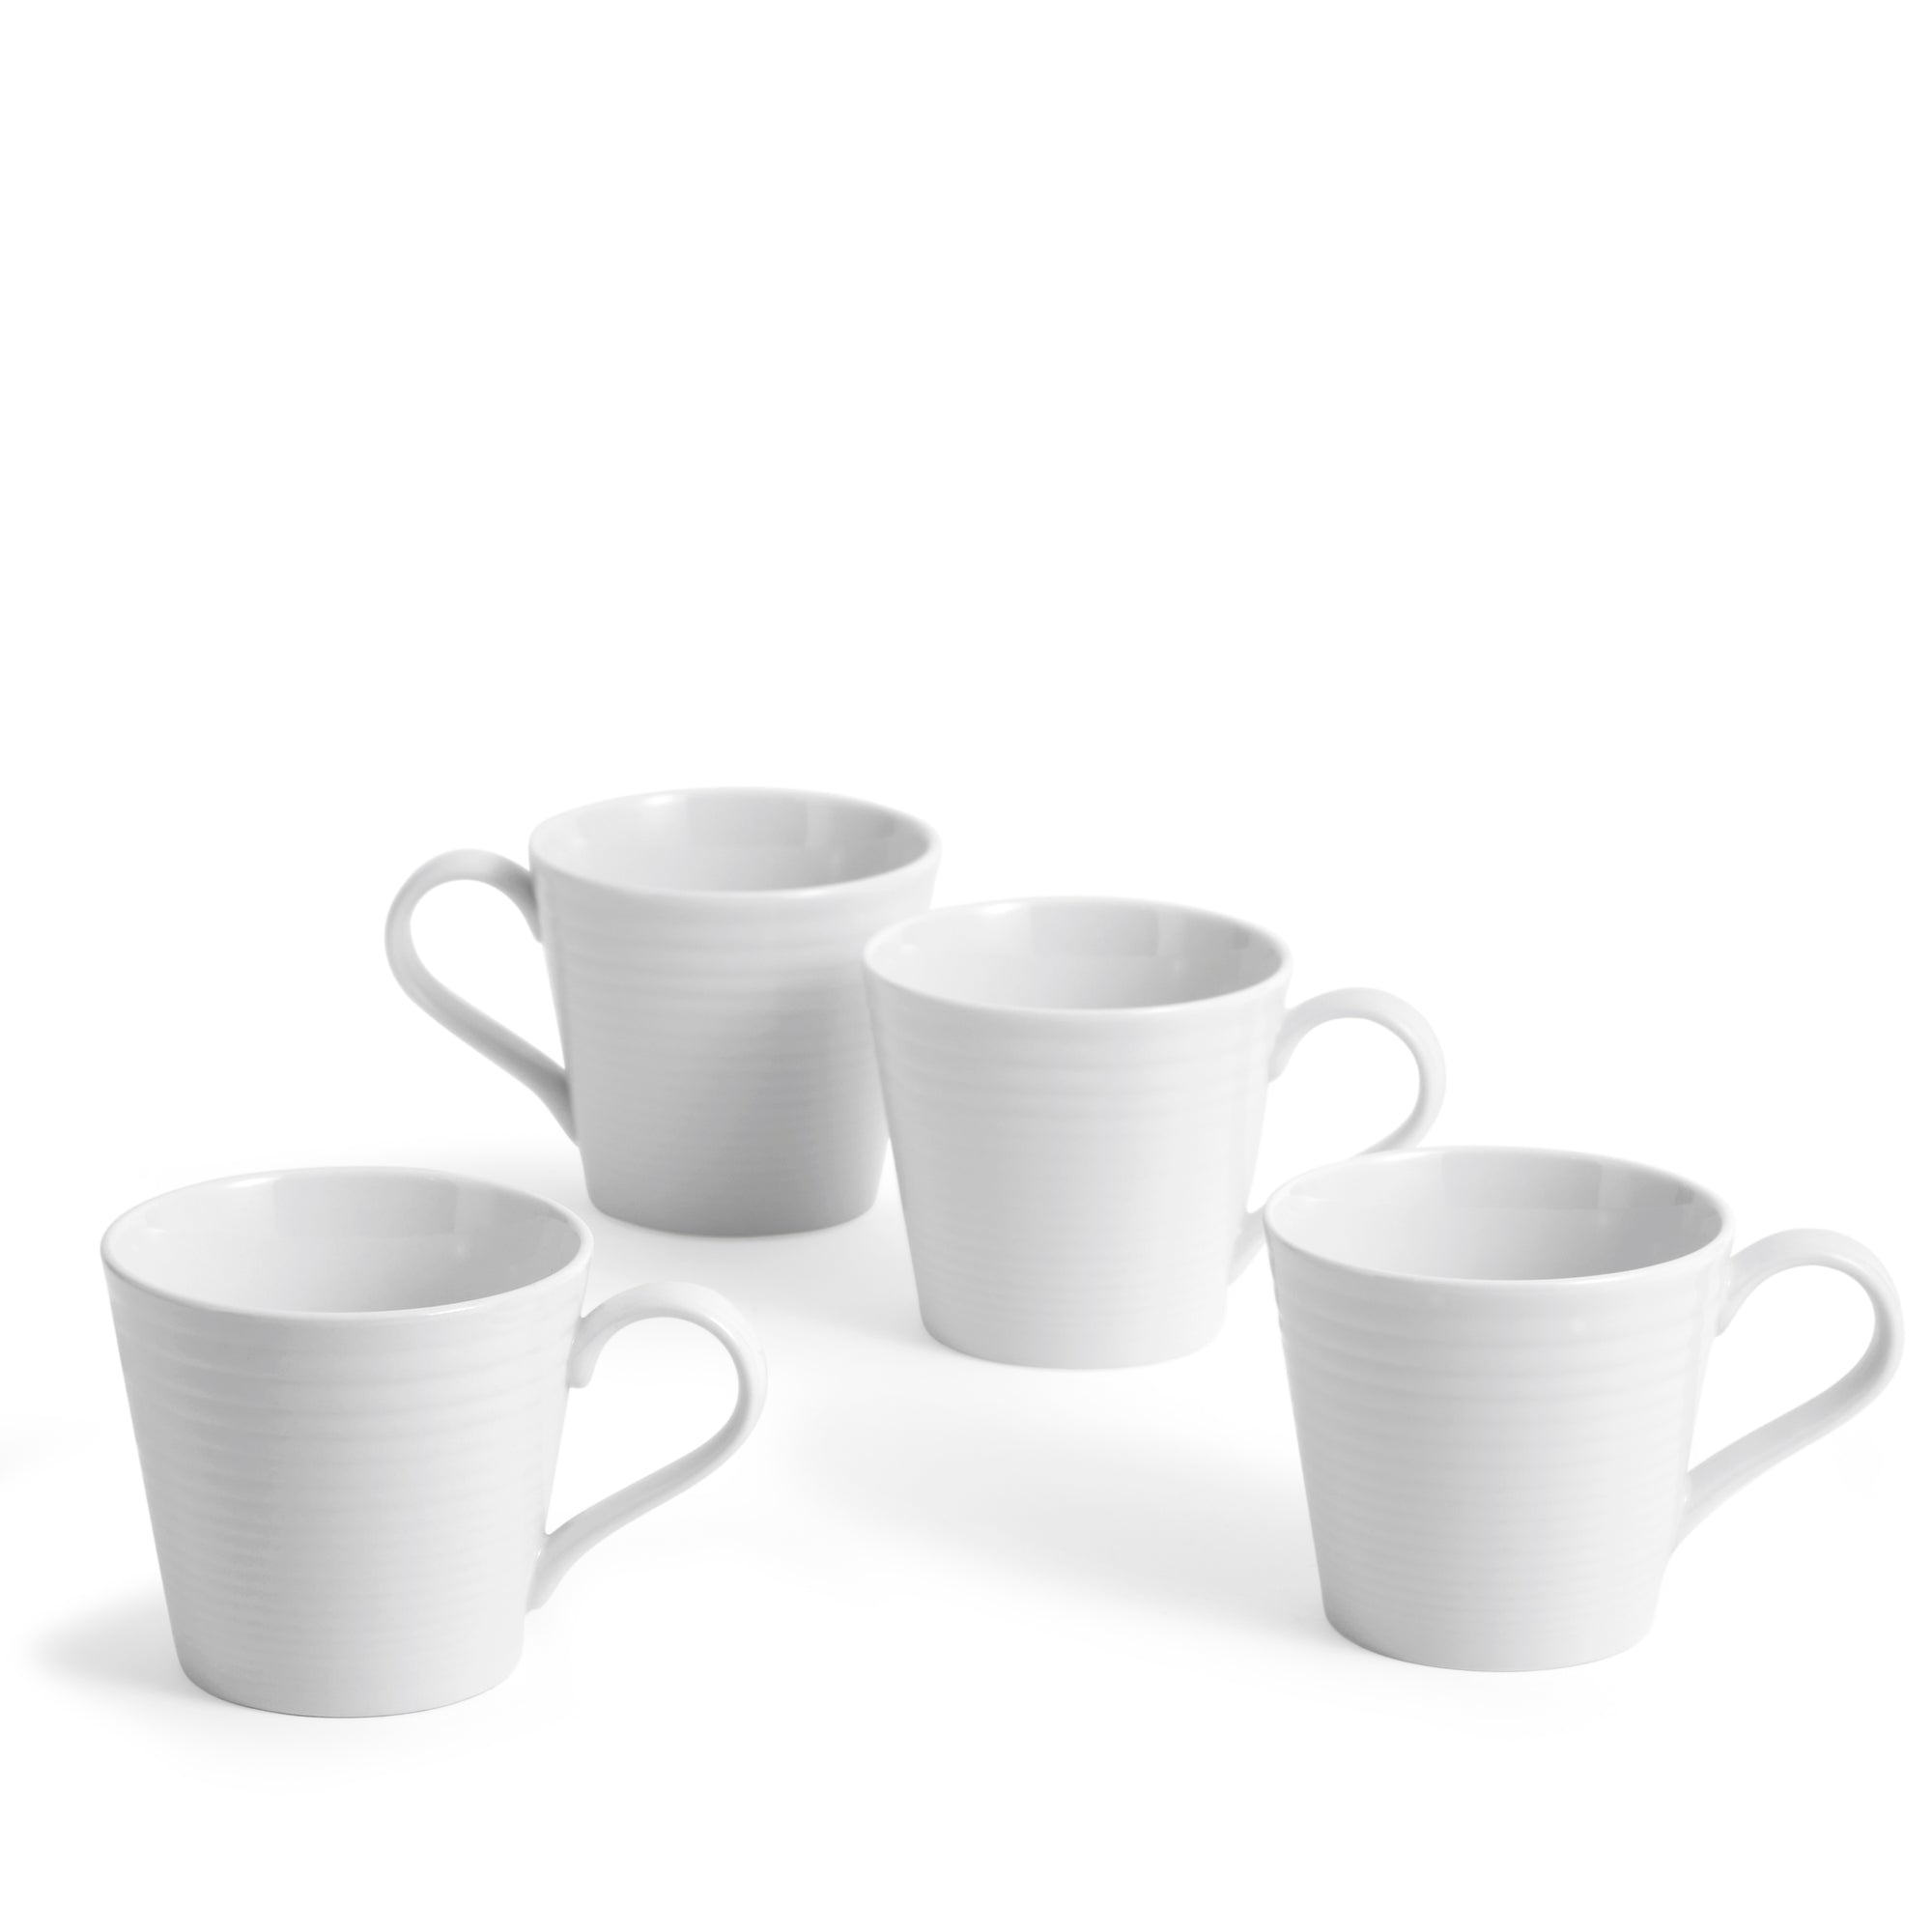 Royal Doulton Gordon Ramsay Maze White Mug - Set of 4